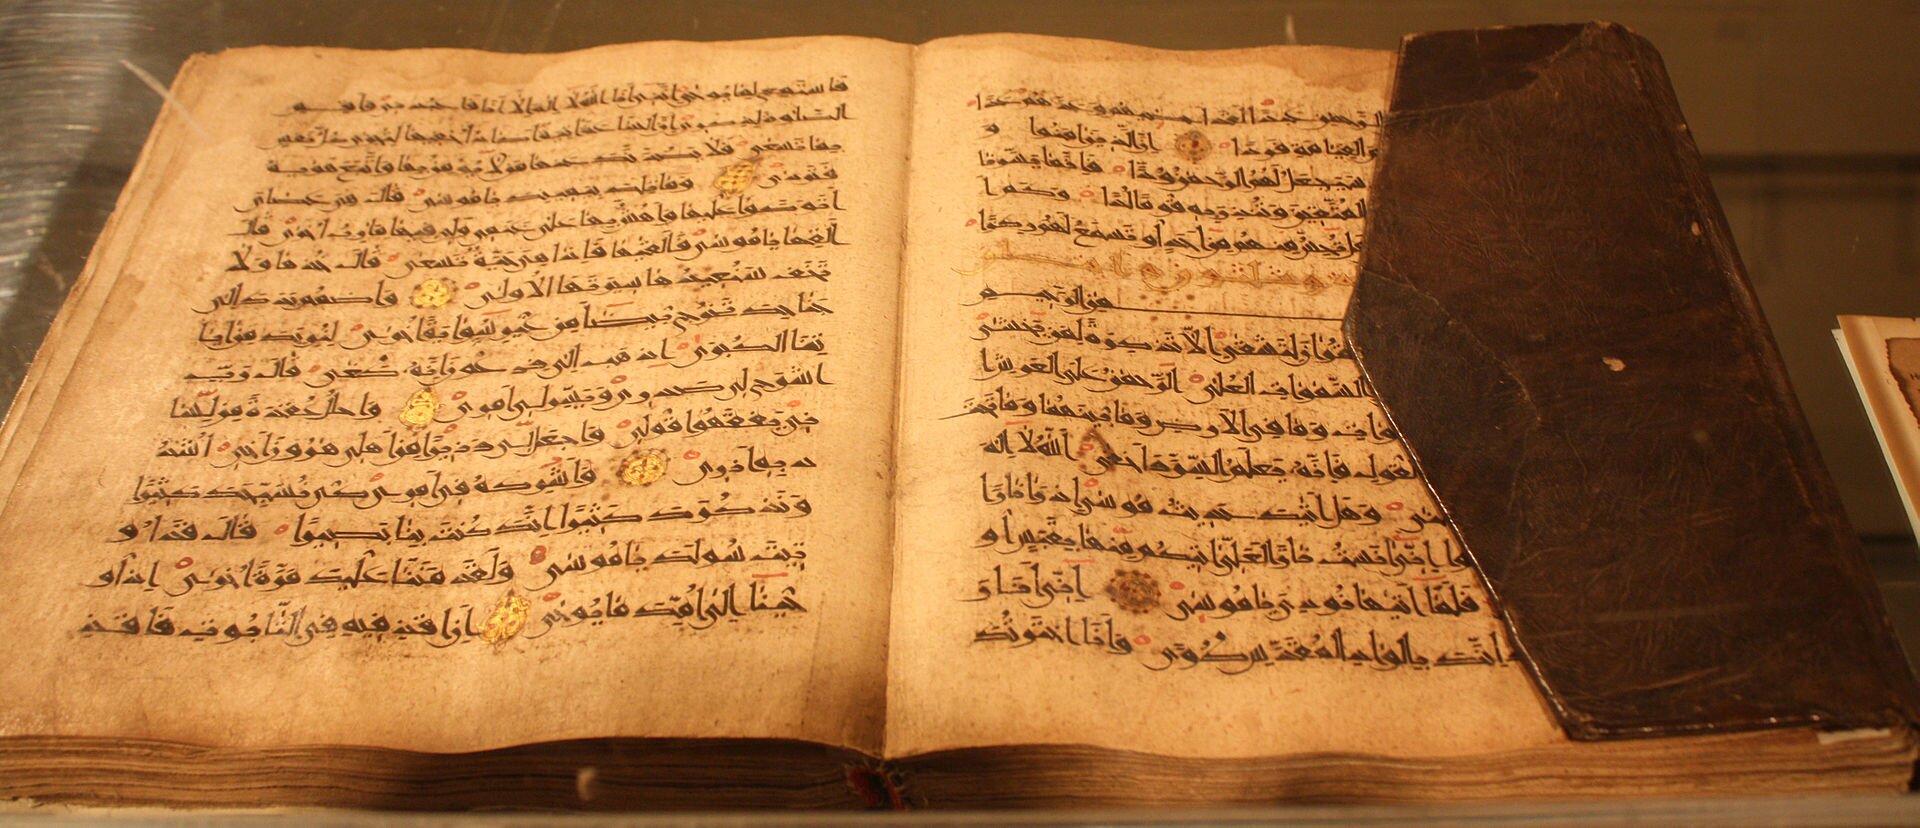 Ilustracja przedstawia otwartą książkę w czarnej oprawie zapisaną pismem arabskim. Zdjęcie jest w barwach pomarańczowo-brązowych.